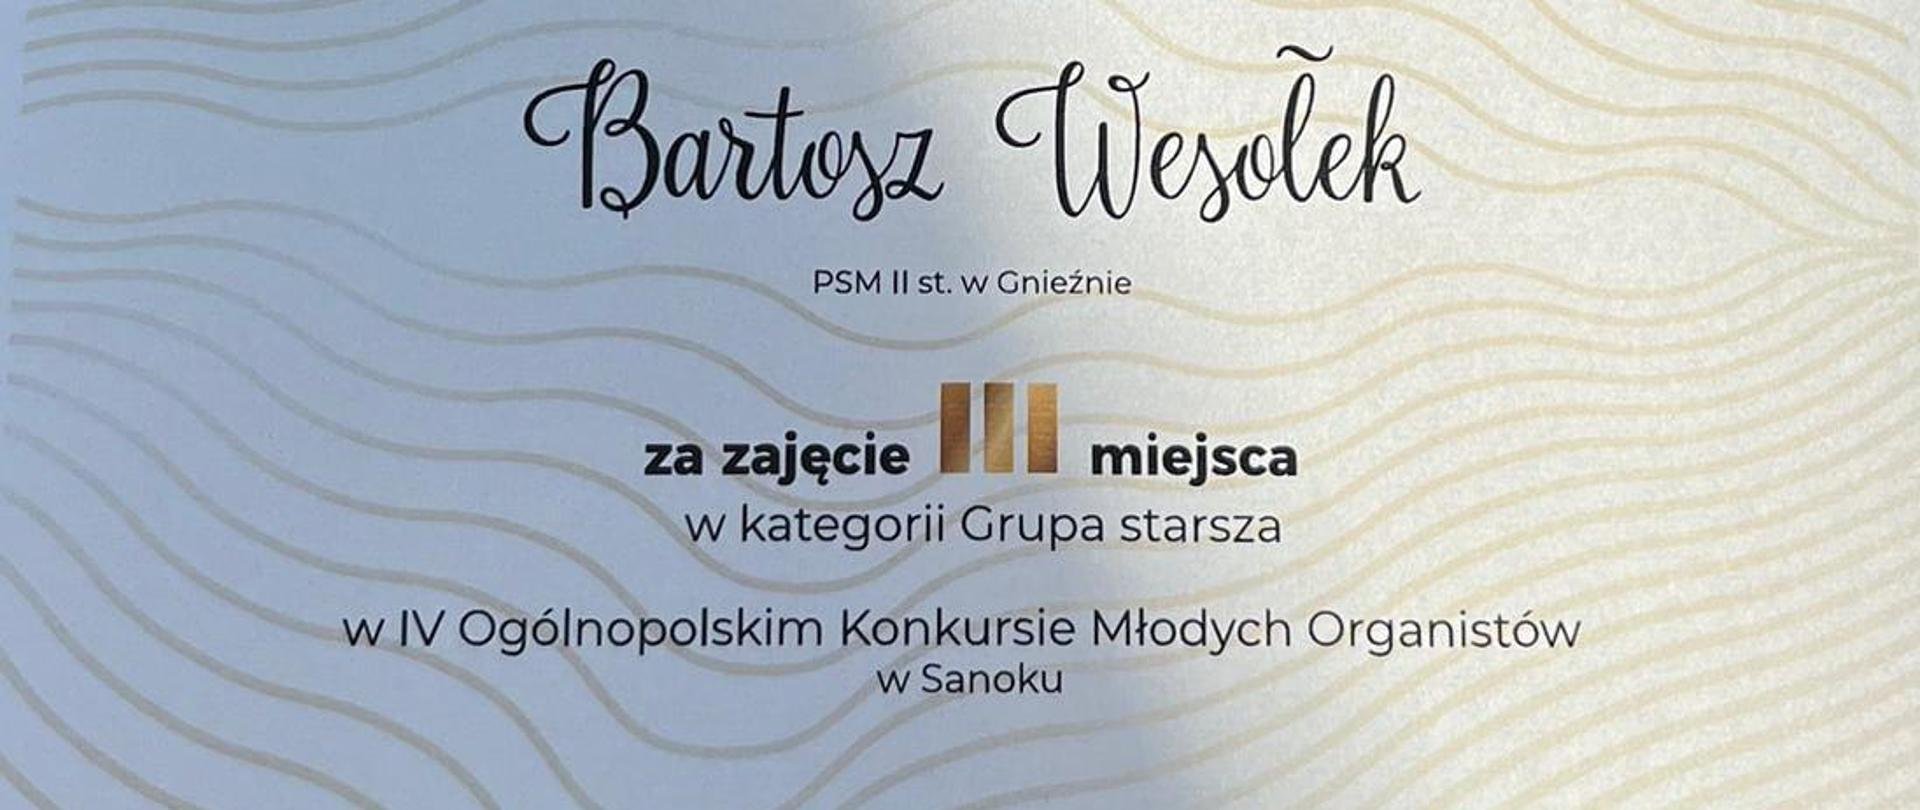 Dyplom dla Bartosza Wesołka, za zajęcie III miejsca w IV Ogólnopolskim Konkursie Młodych Organistów w Sanoku